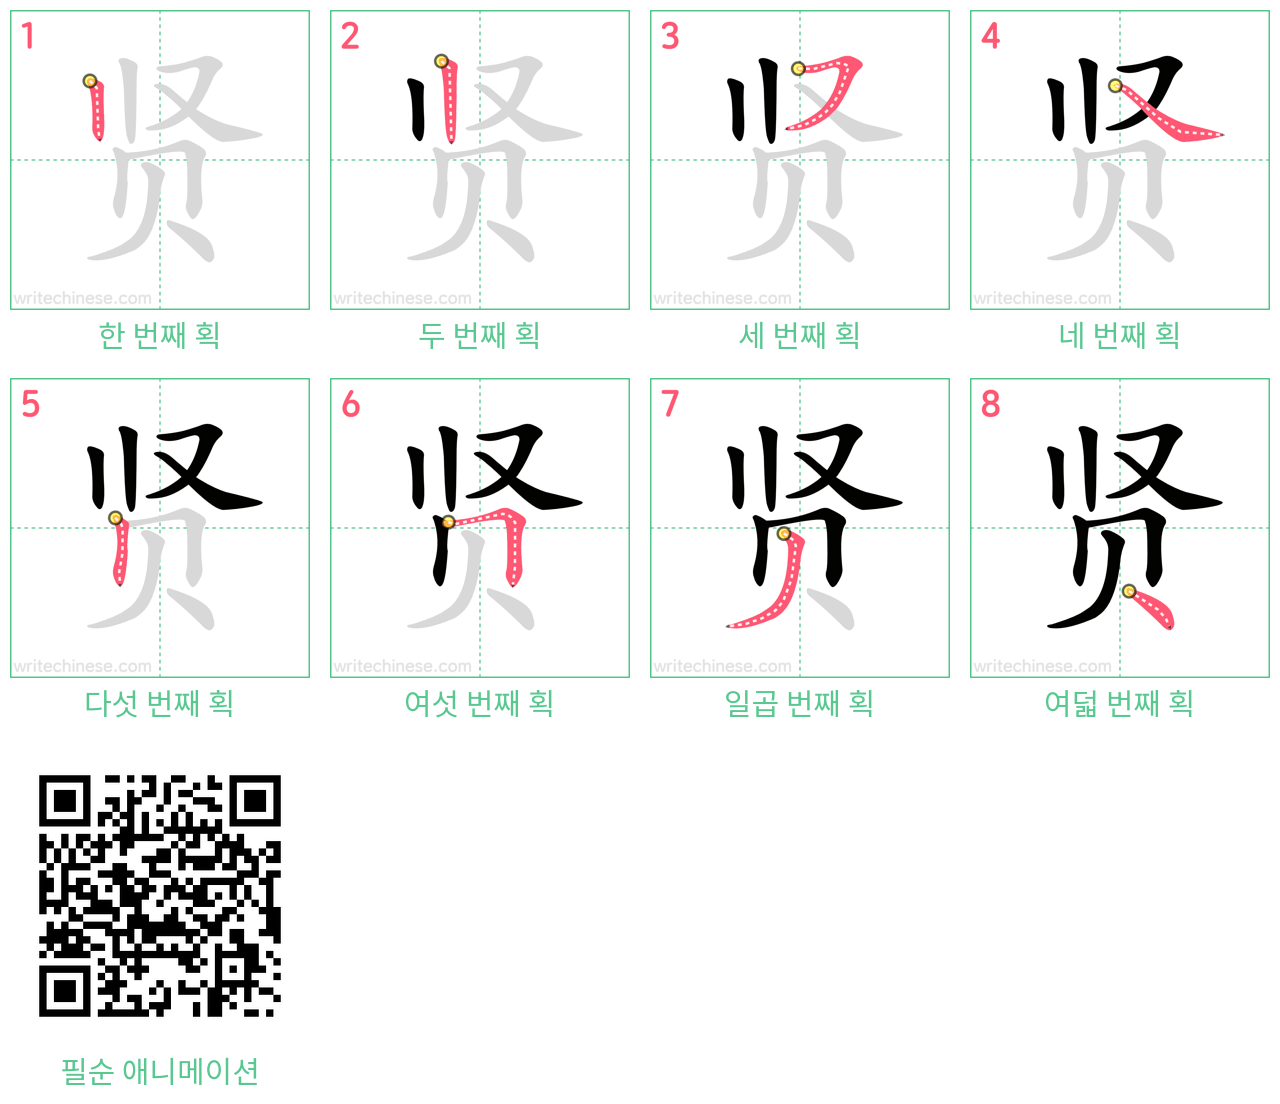 贤 step-by-step stroke order diagrams